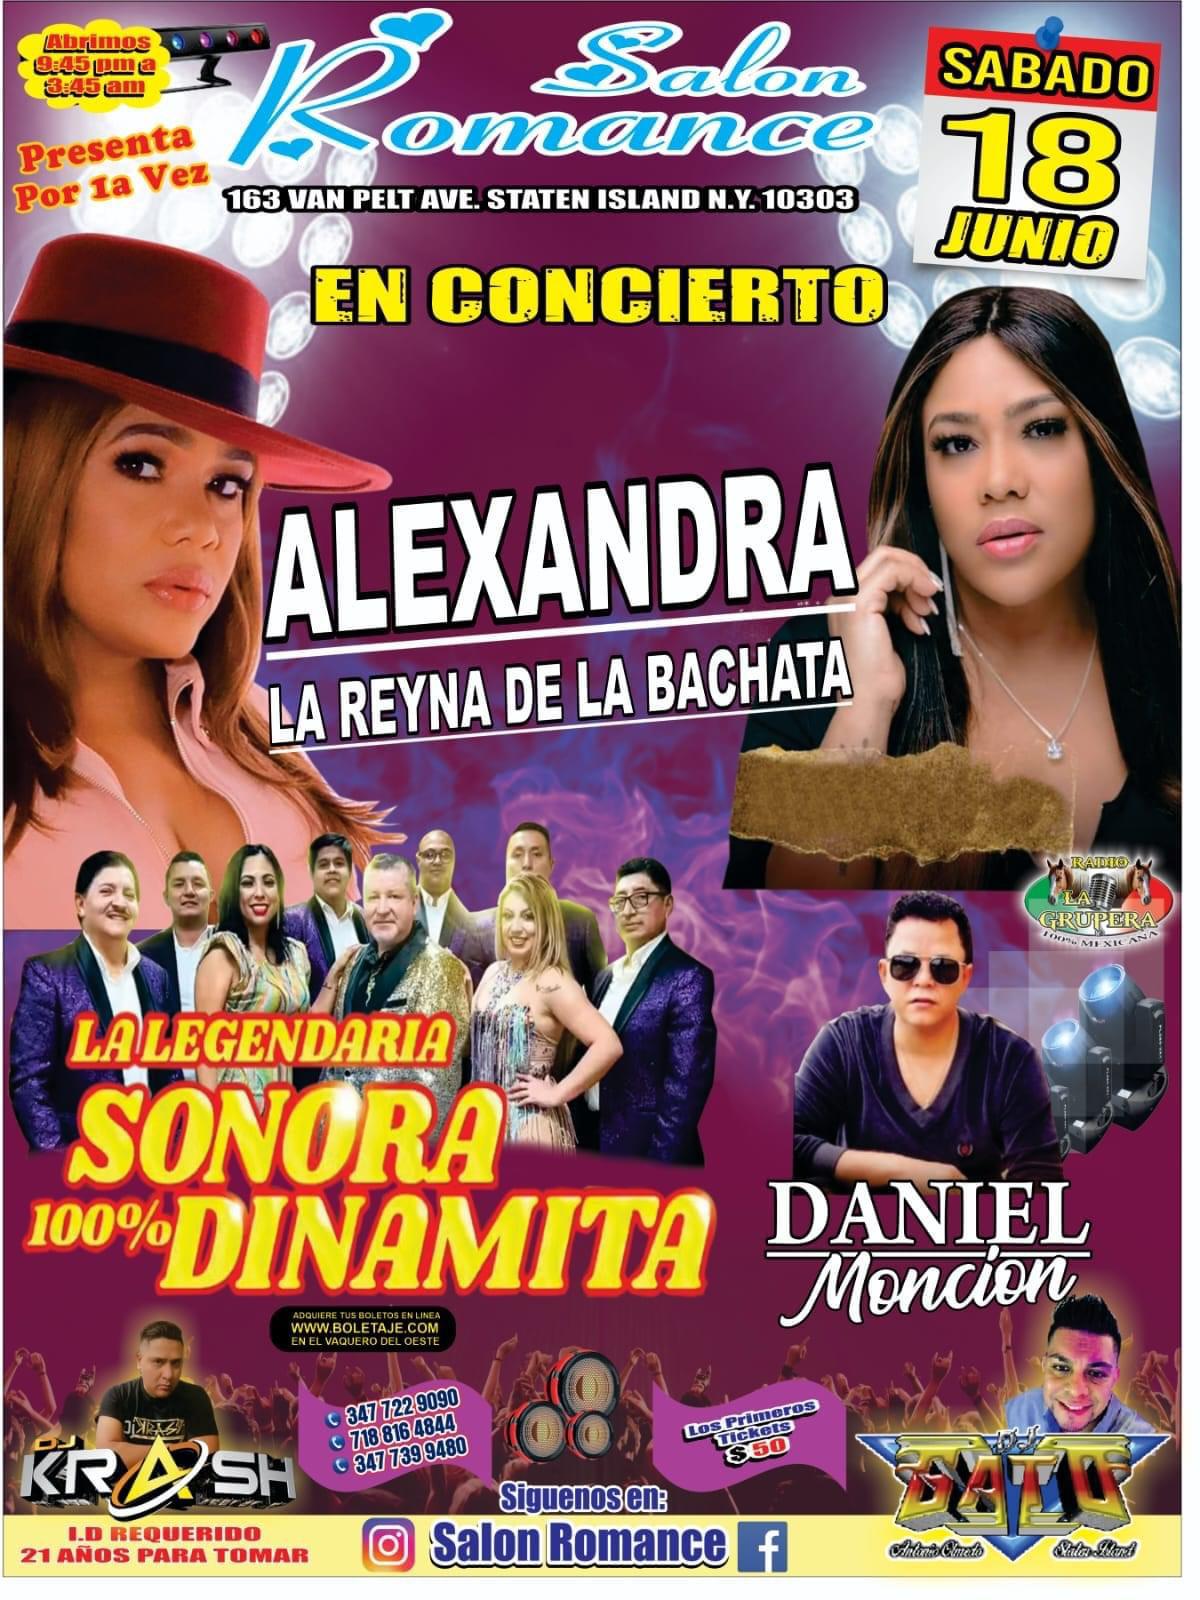 Alexandra, Sonora Dinamita y Daniel Moncion